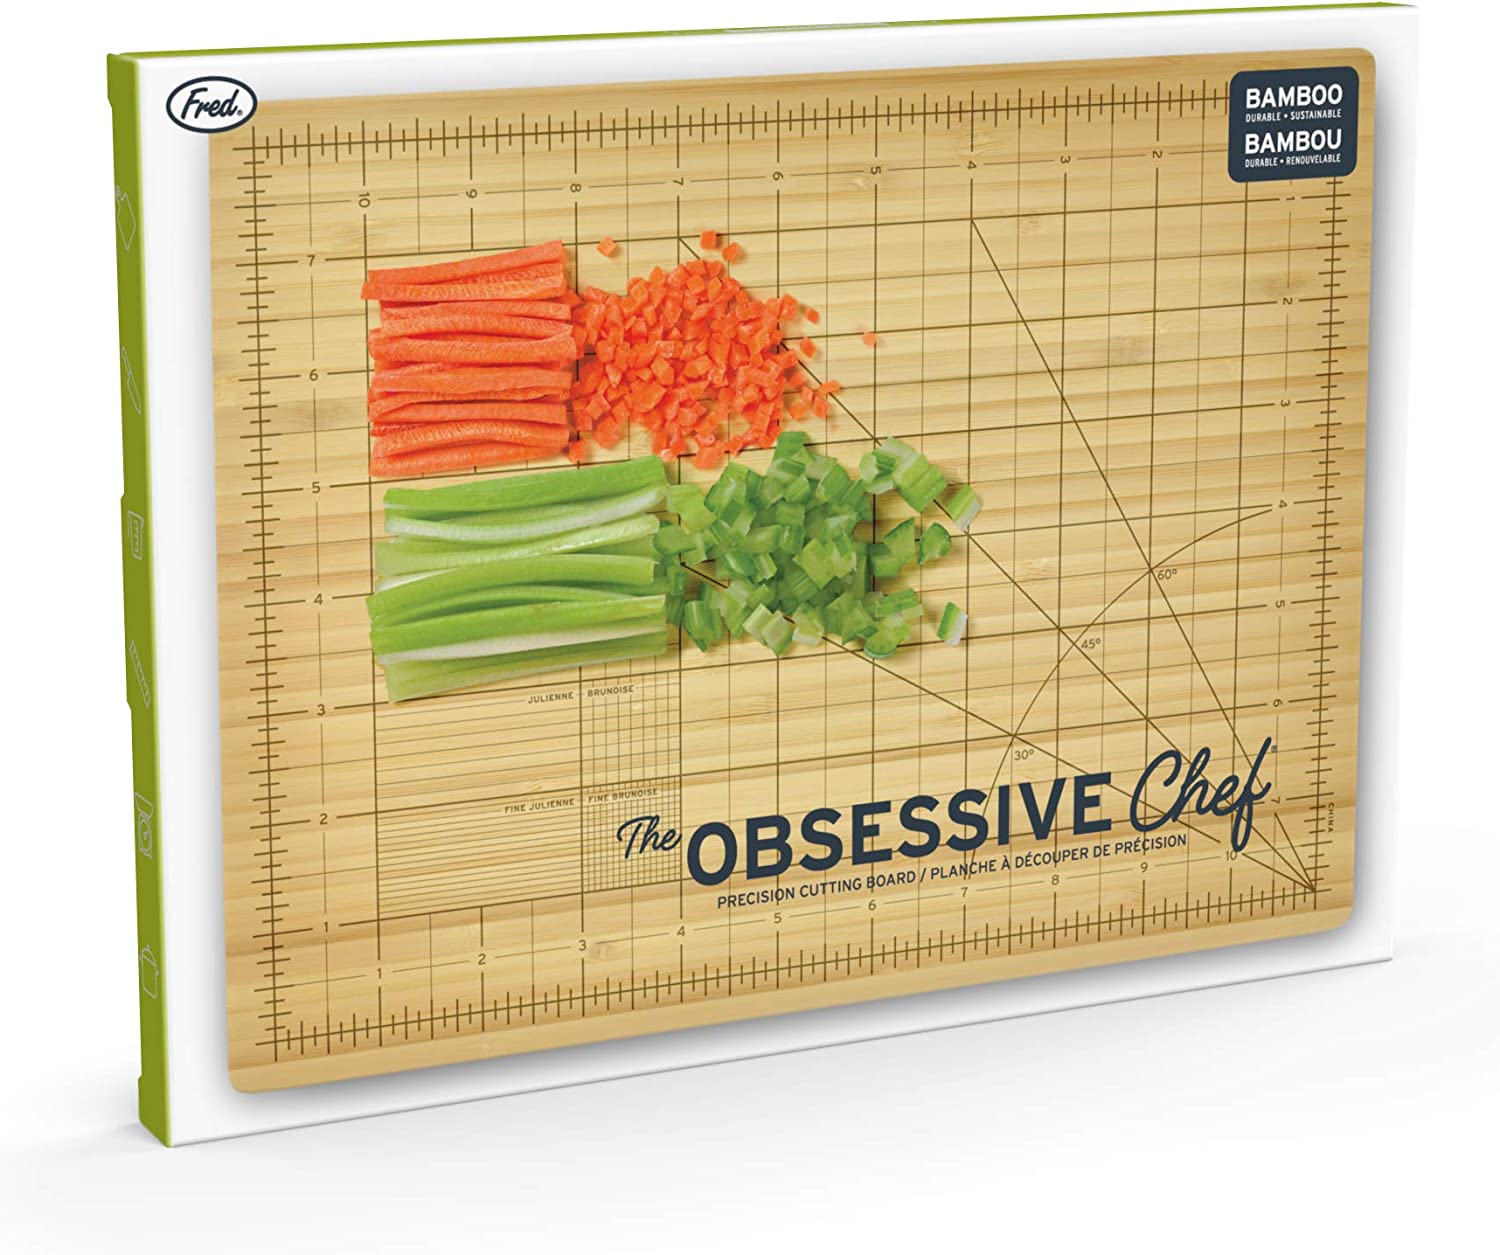 Bamboo Obsessive Chef Wood Cutting Board